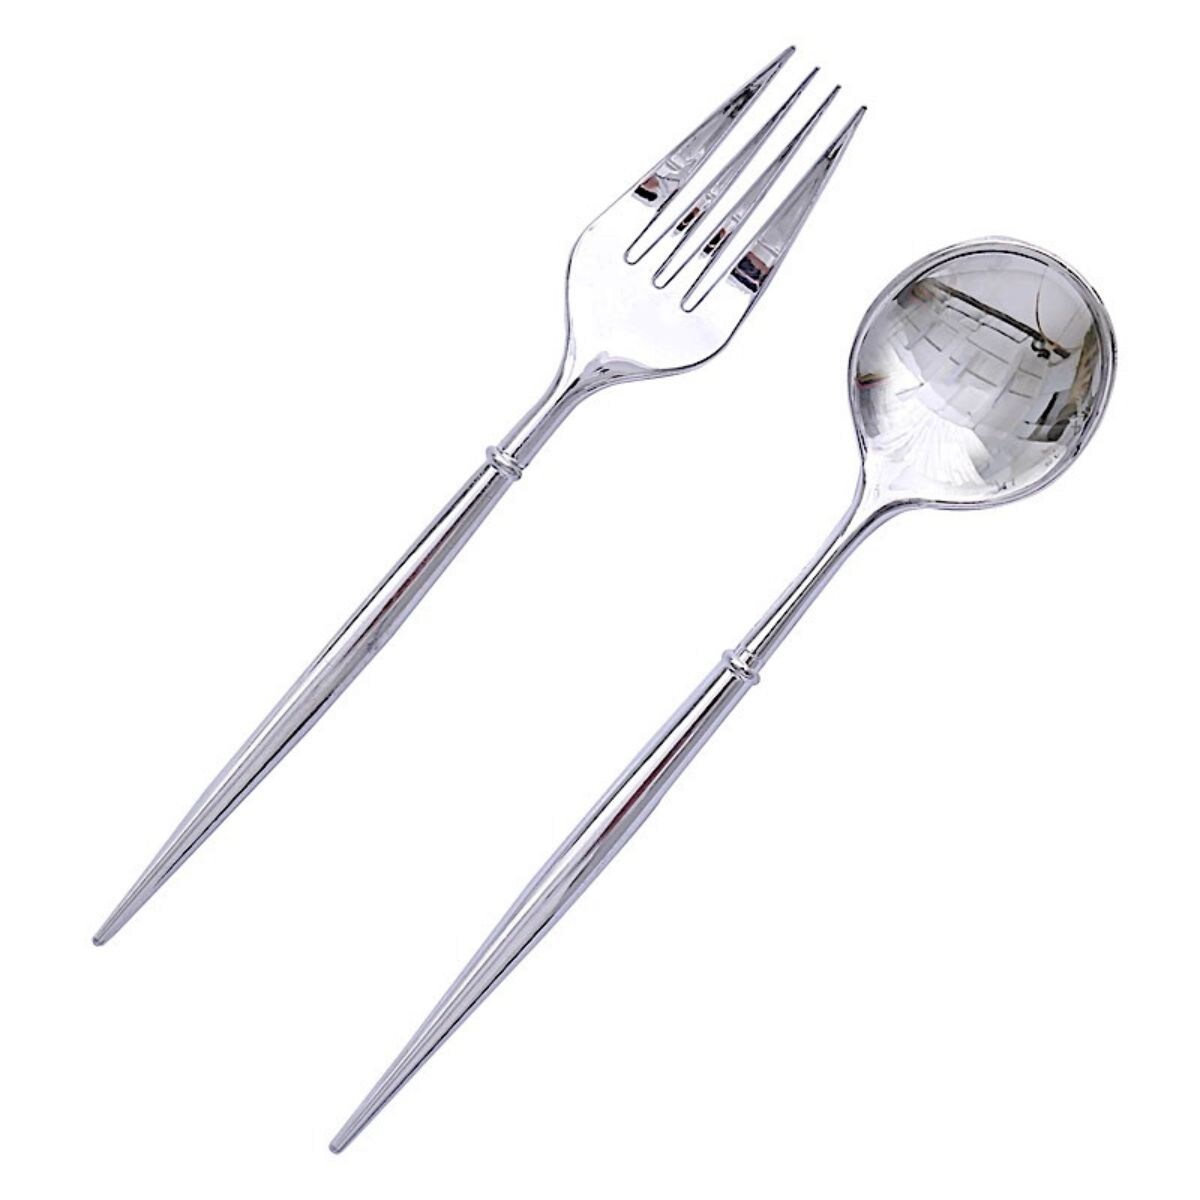 6 Inches Premium Plastic Cutlery Set 24 pcs